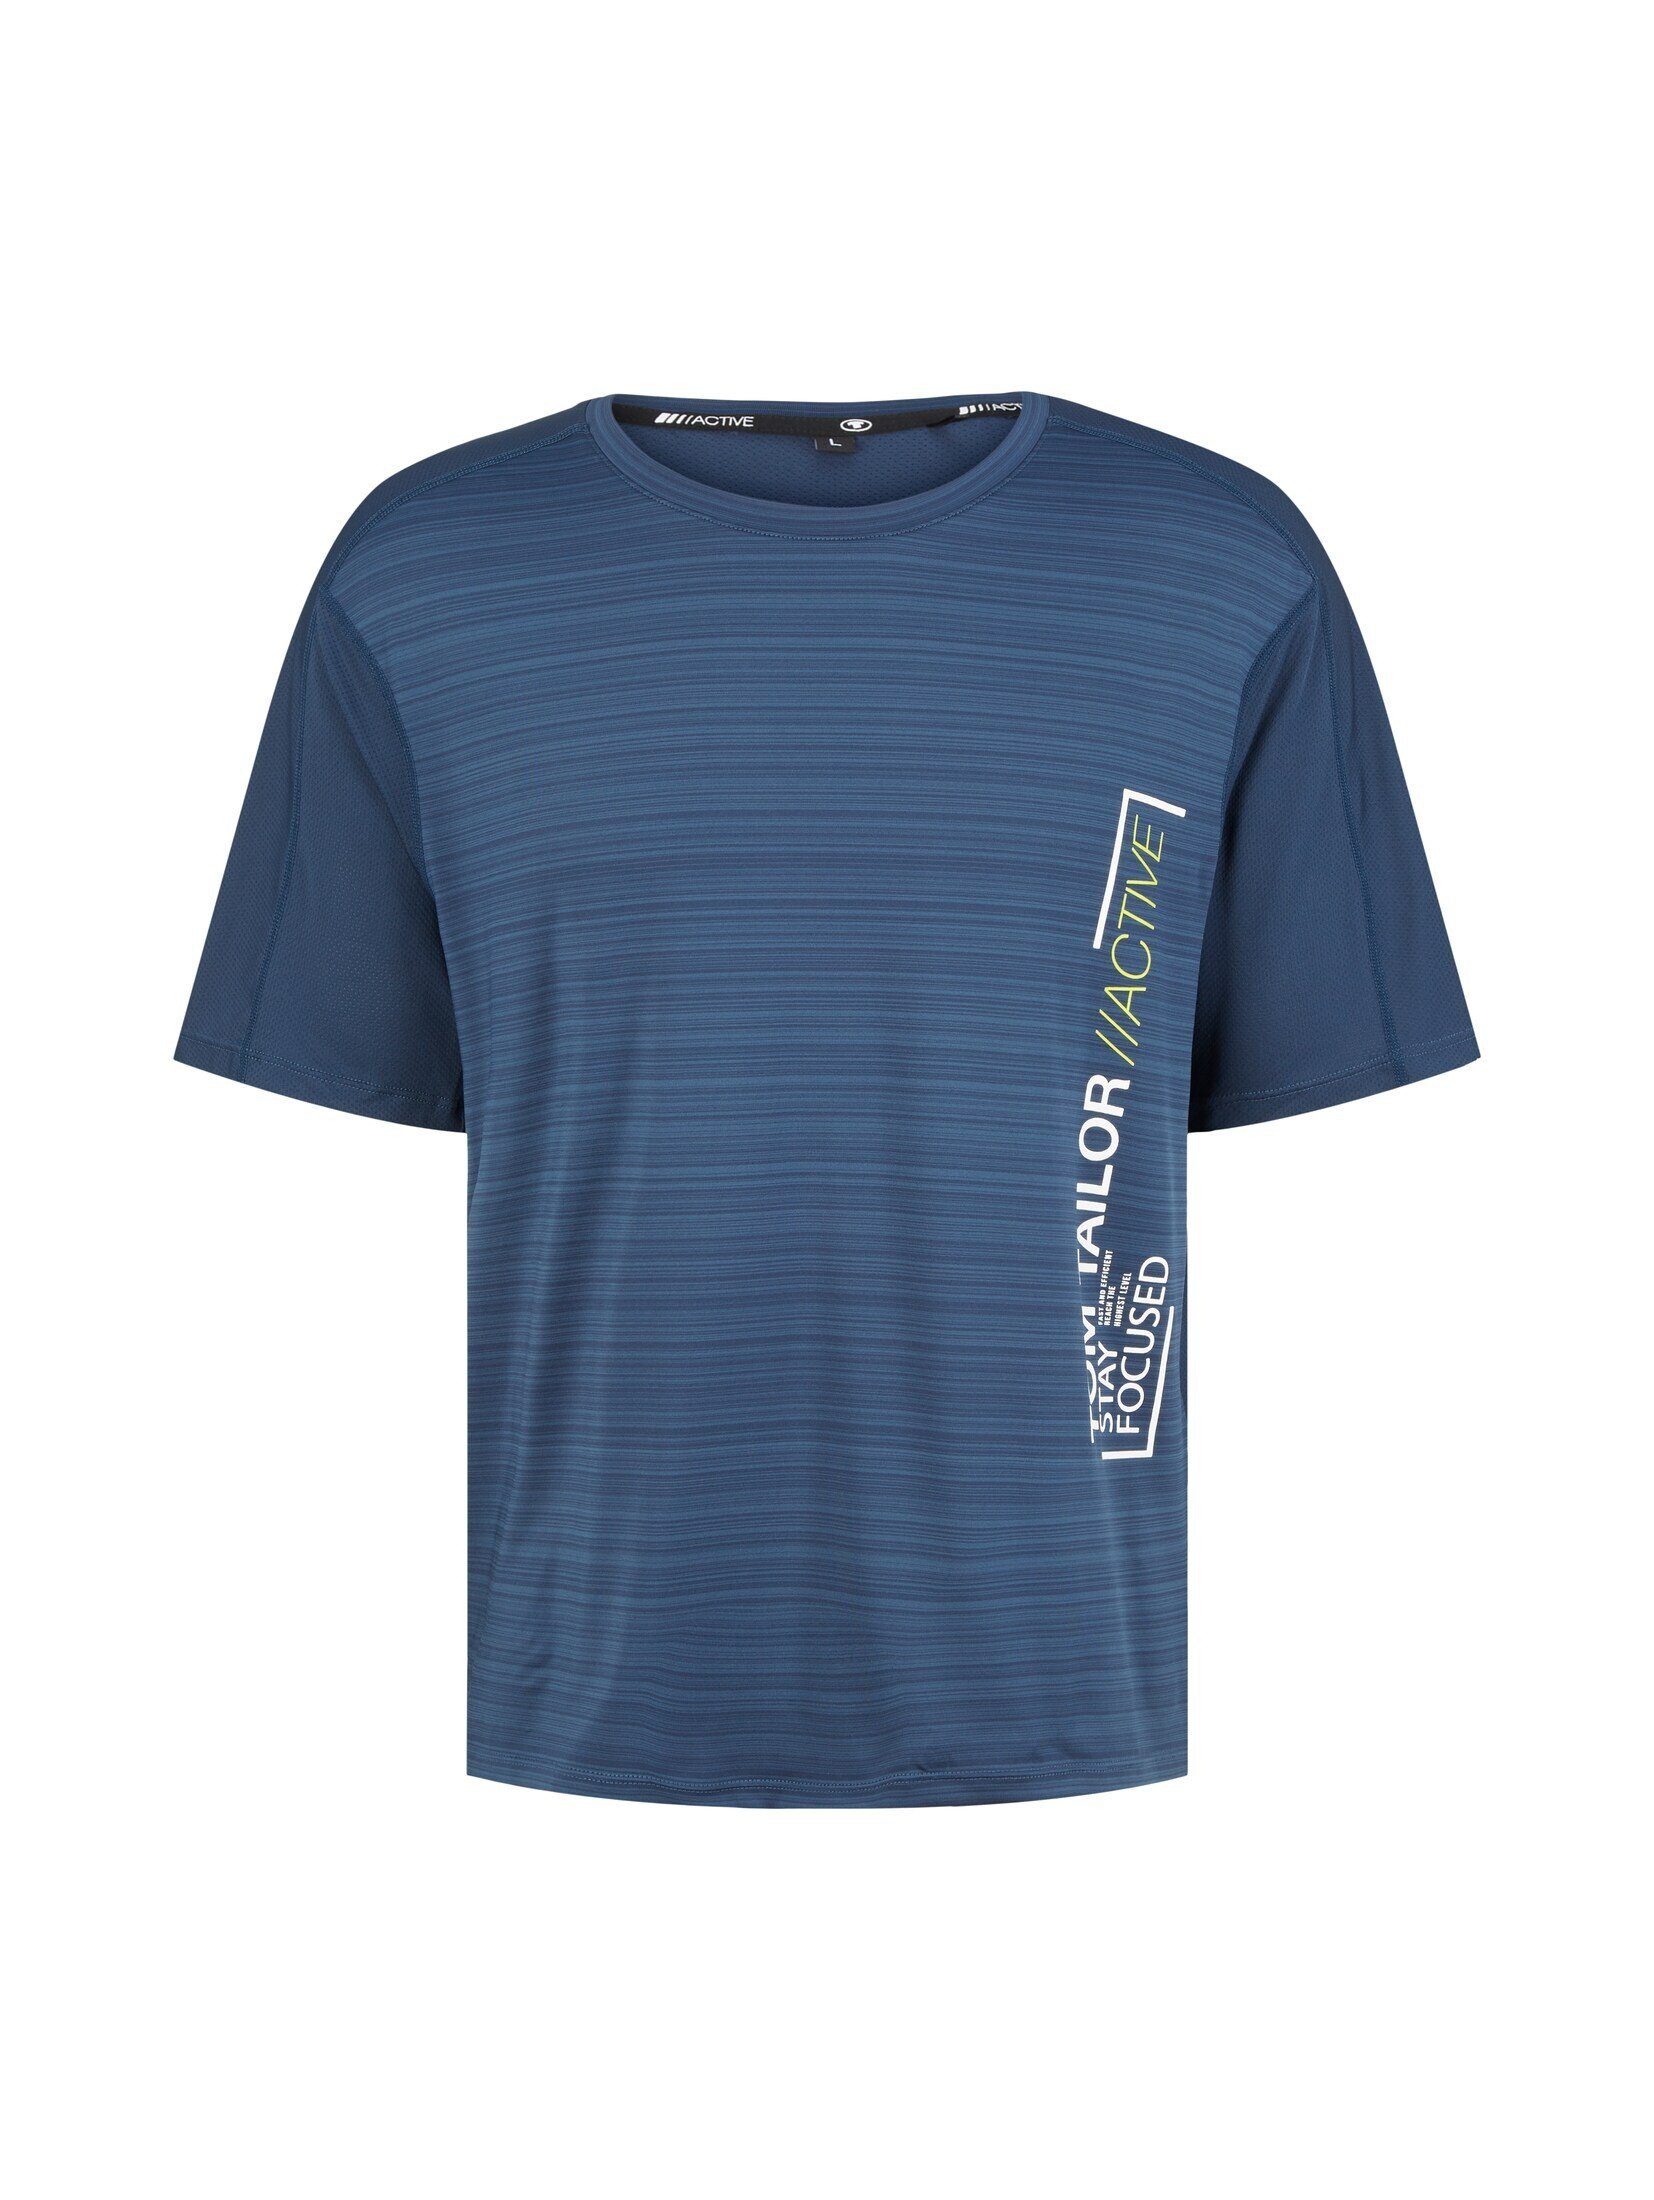 T-Shirt mit TOM Light Blue Langarmshirt TAILOR Textprint Dot Atmungsaktives